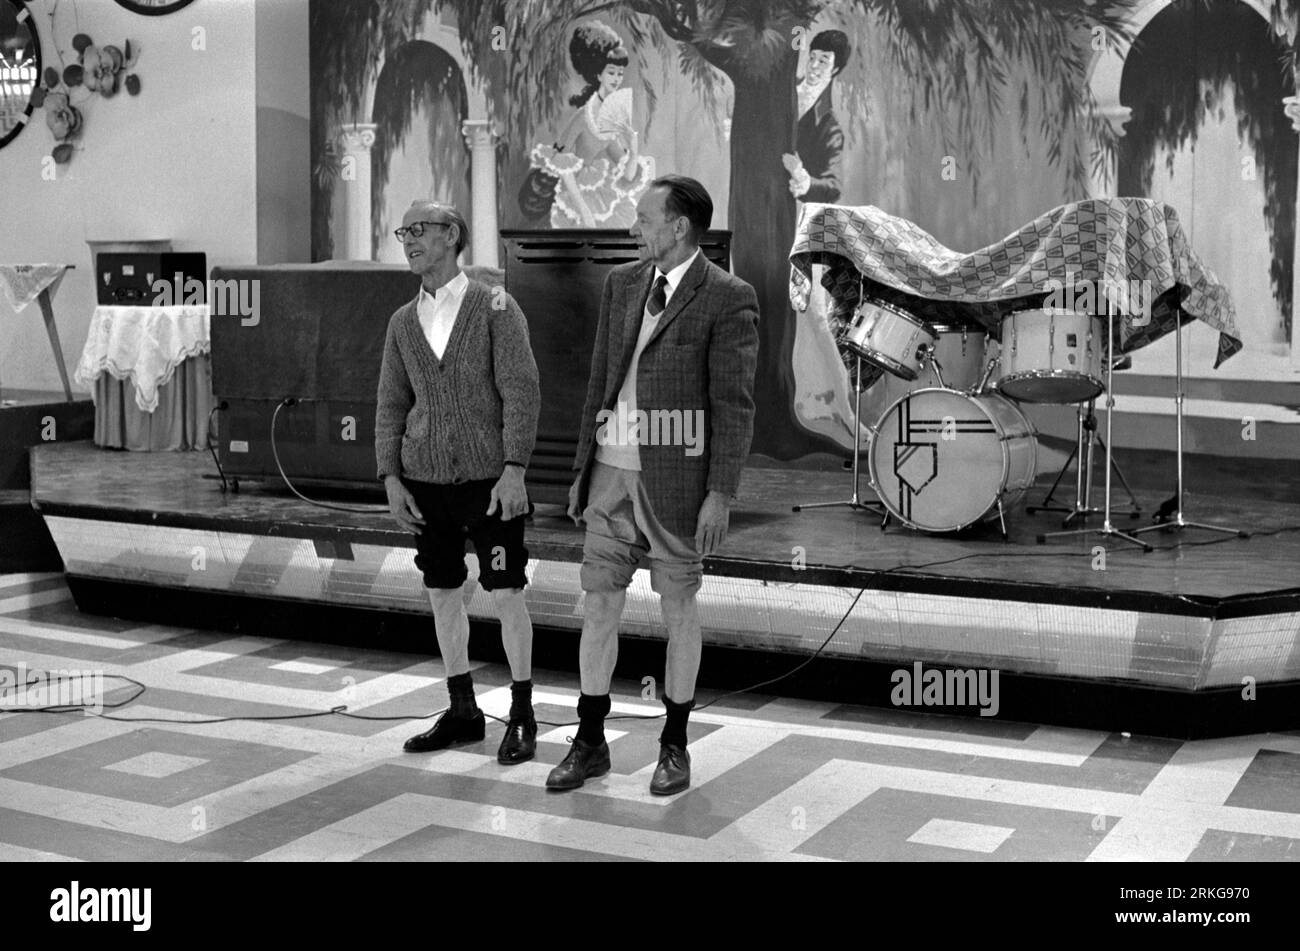 Butlins Holiday Camp, 1970er Jahre, Großbritannien. Zwei Herren Urlauber mit hochgekrempelten Hosenbeinen nehmen am besten und härtesten Wettkampf der Kälbermuskulatur Teil. Bognor Regis, West Sussex, England um 1972. HOMER SYKES Stockfoto